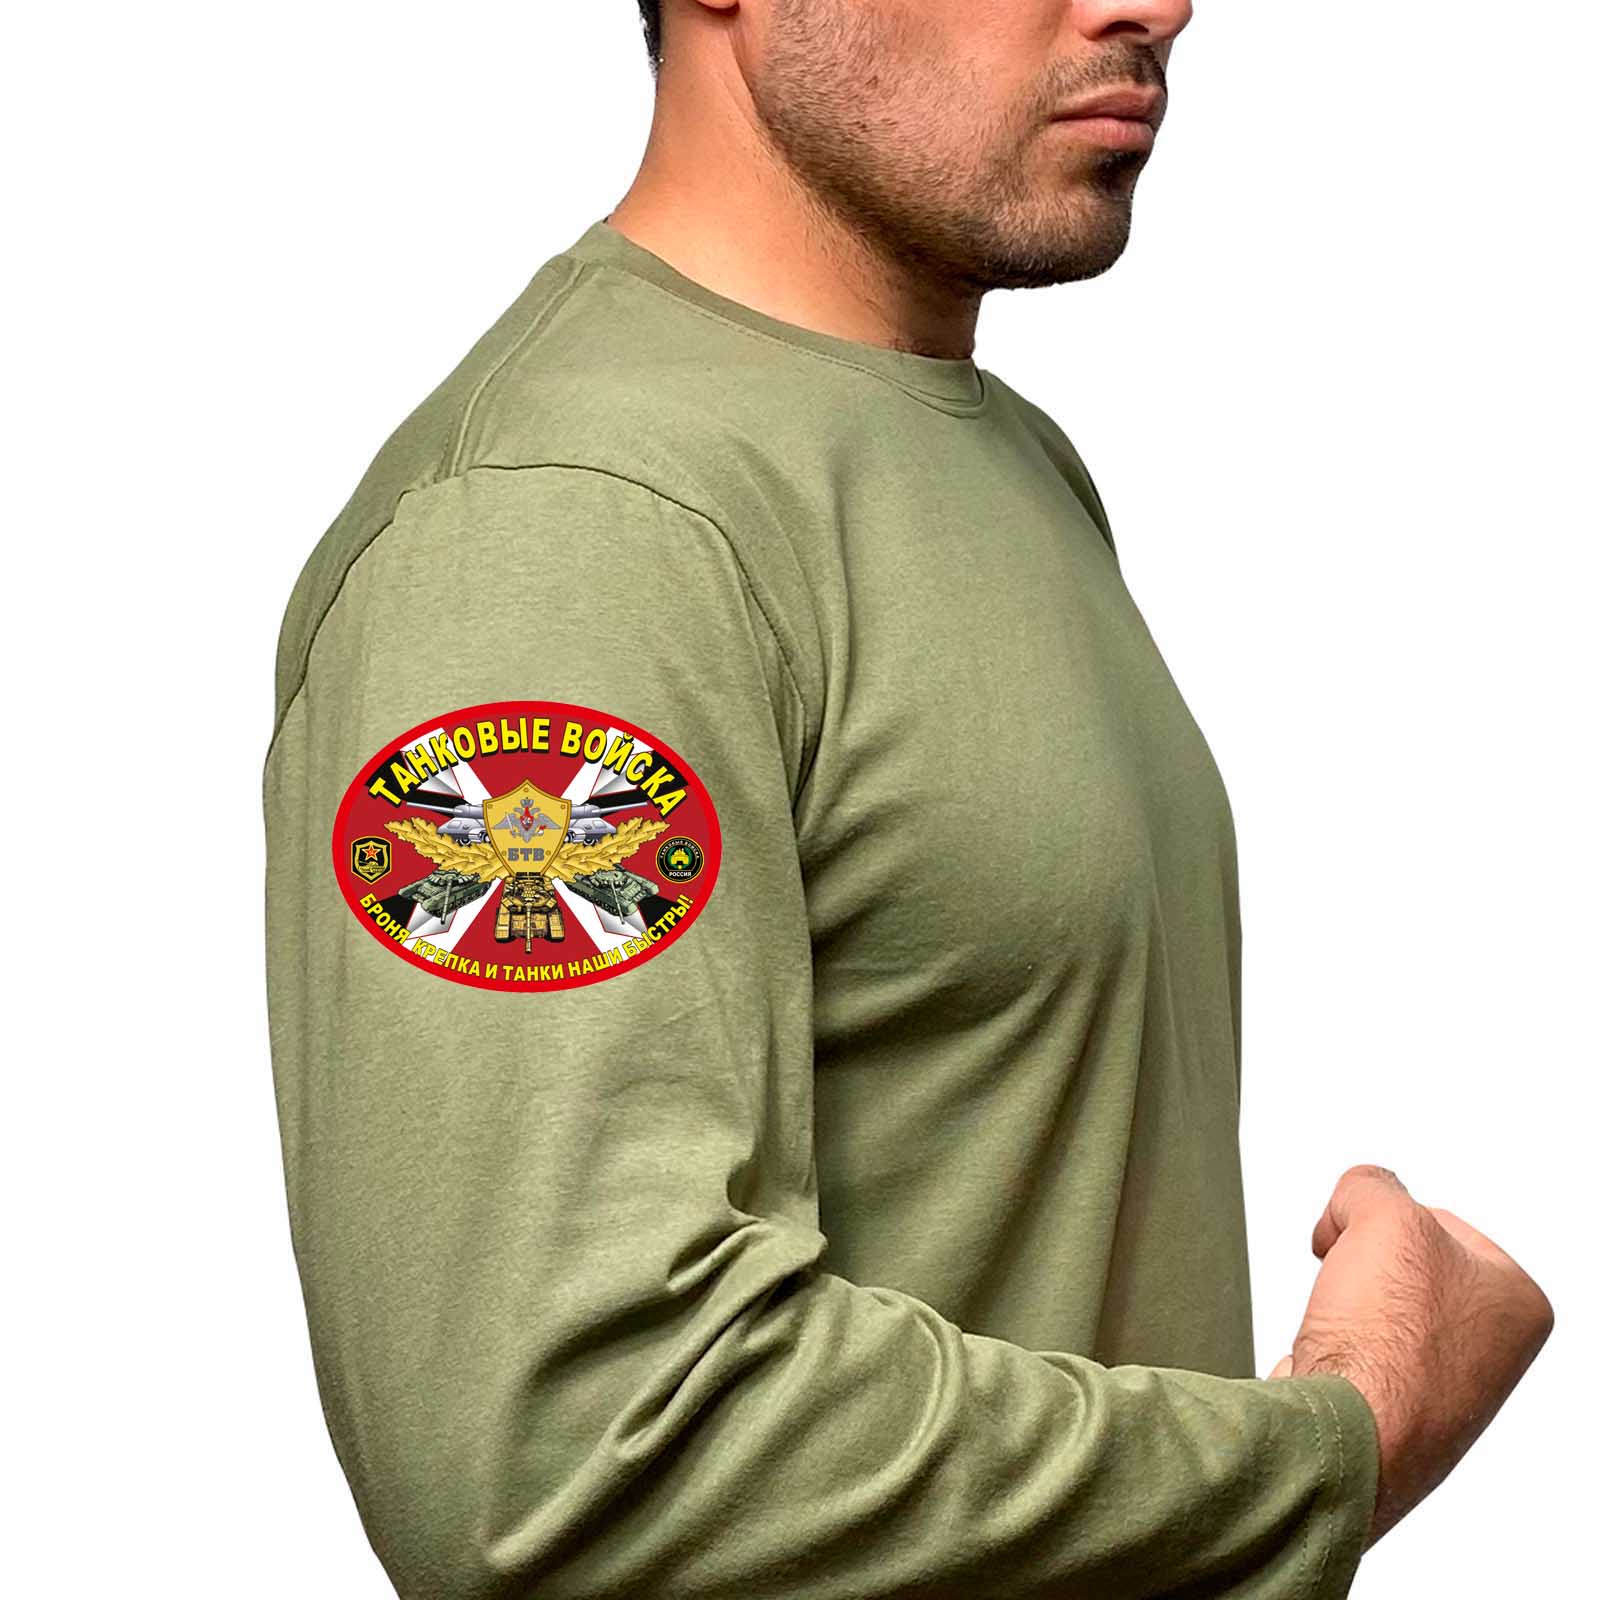 Купить надежную футболку с длинным рукавом с термотрансфером Танковые войска выгодно